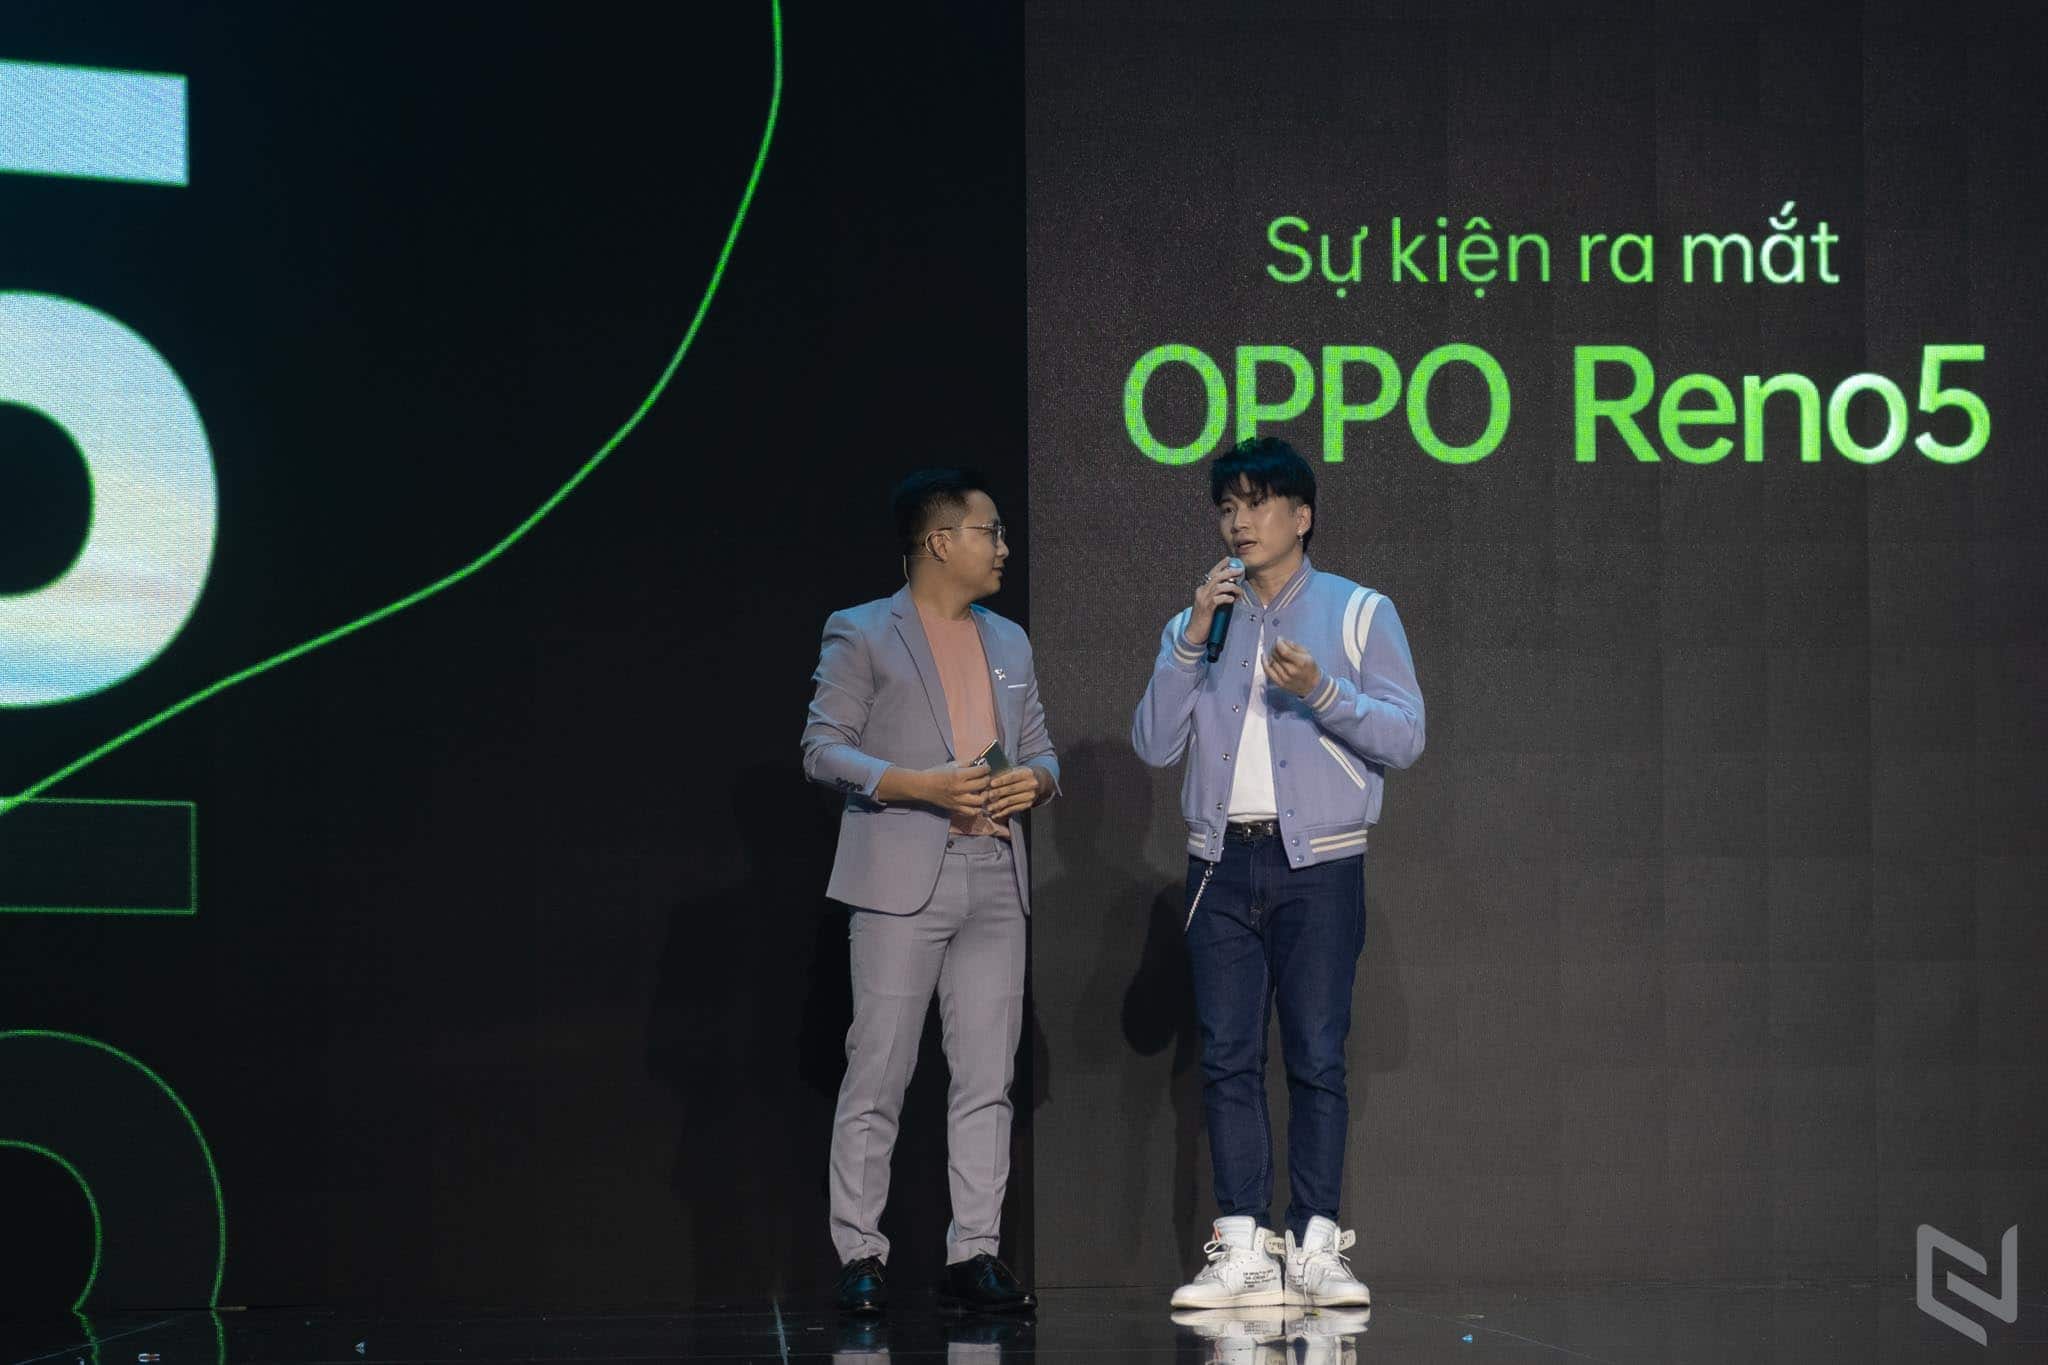 Karik hé lộ sẽ sử dụng tính năng Video hiển thị kép và phơi sáng kép của OPPO Reno5 trong MV mới